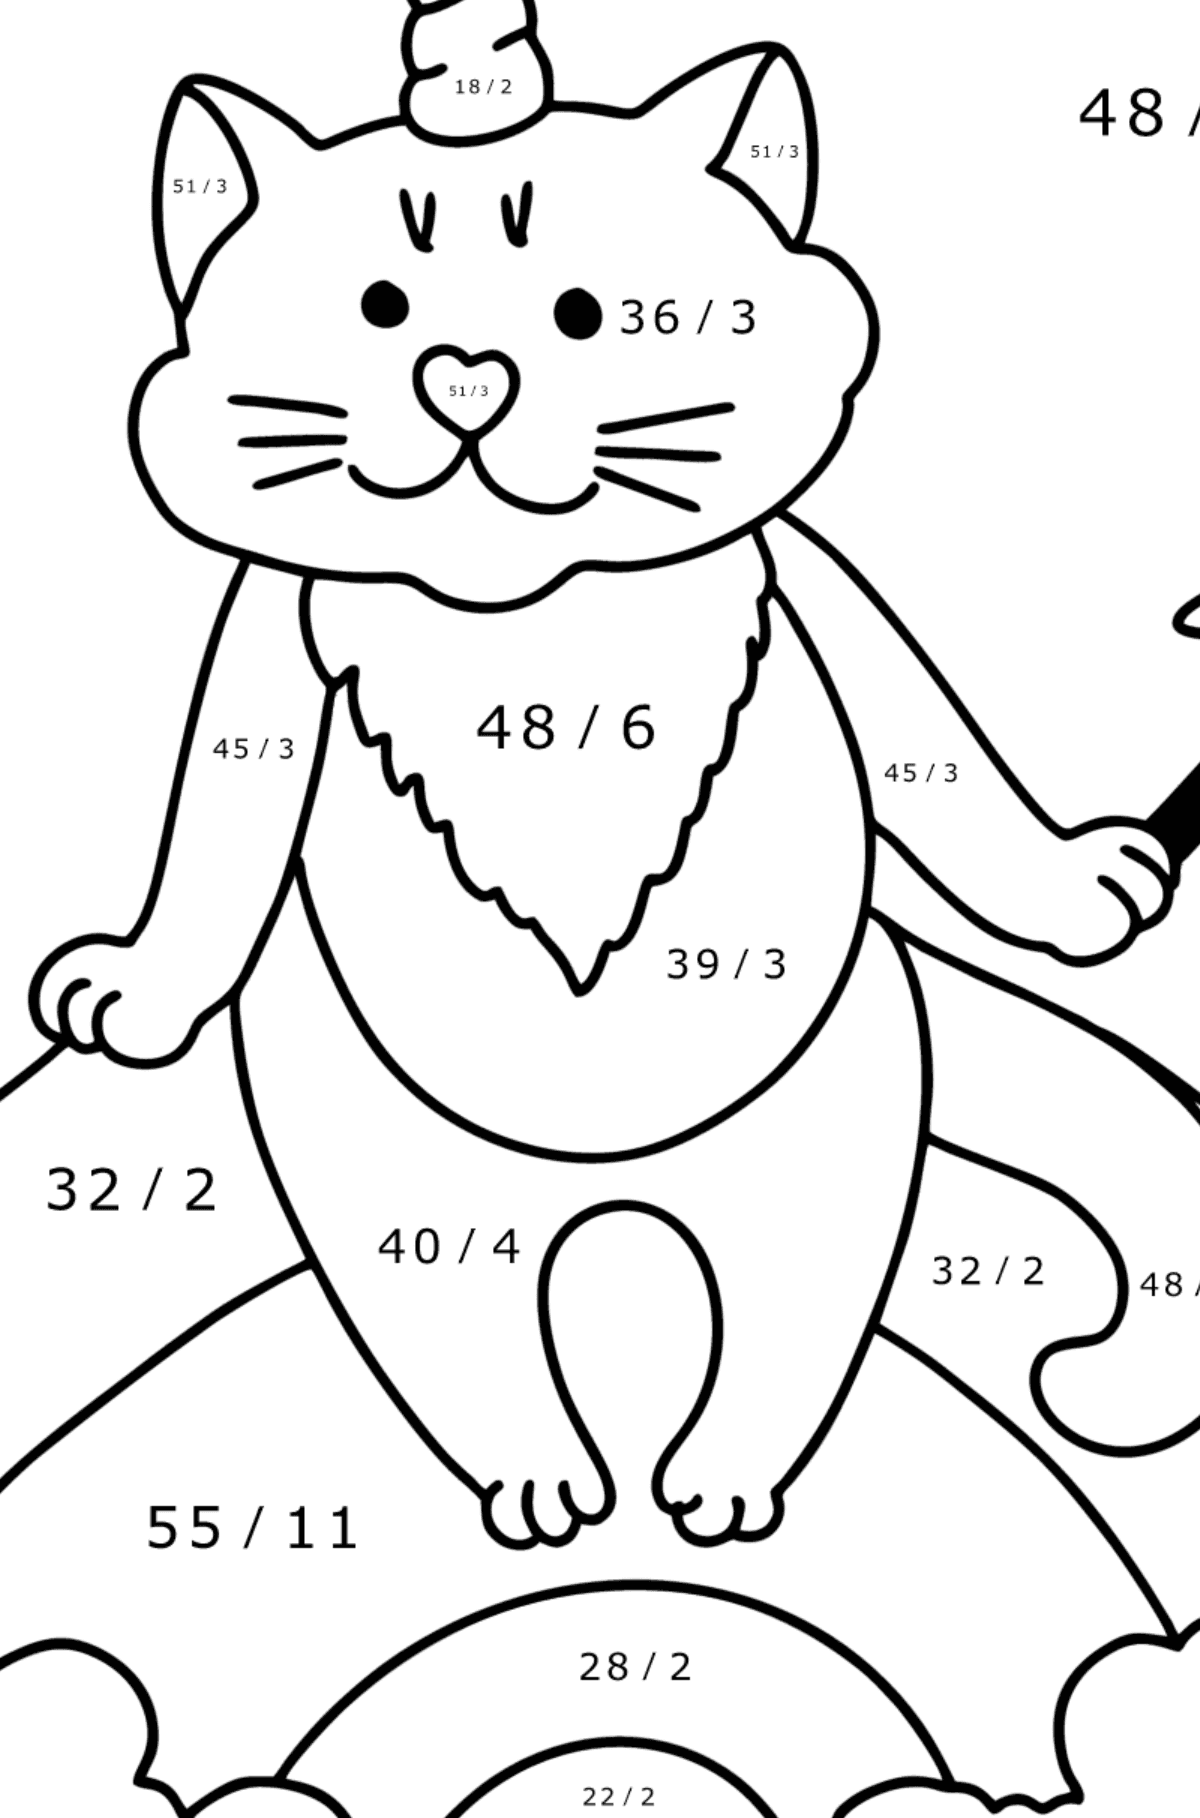 Disegno di Gattino unicorno da colorare - Colorazione matematica - Divisione per bambini